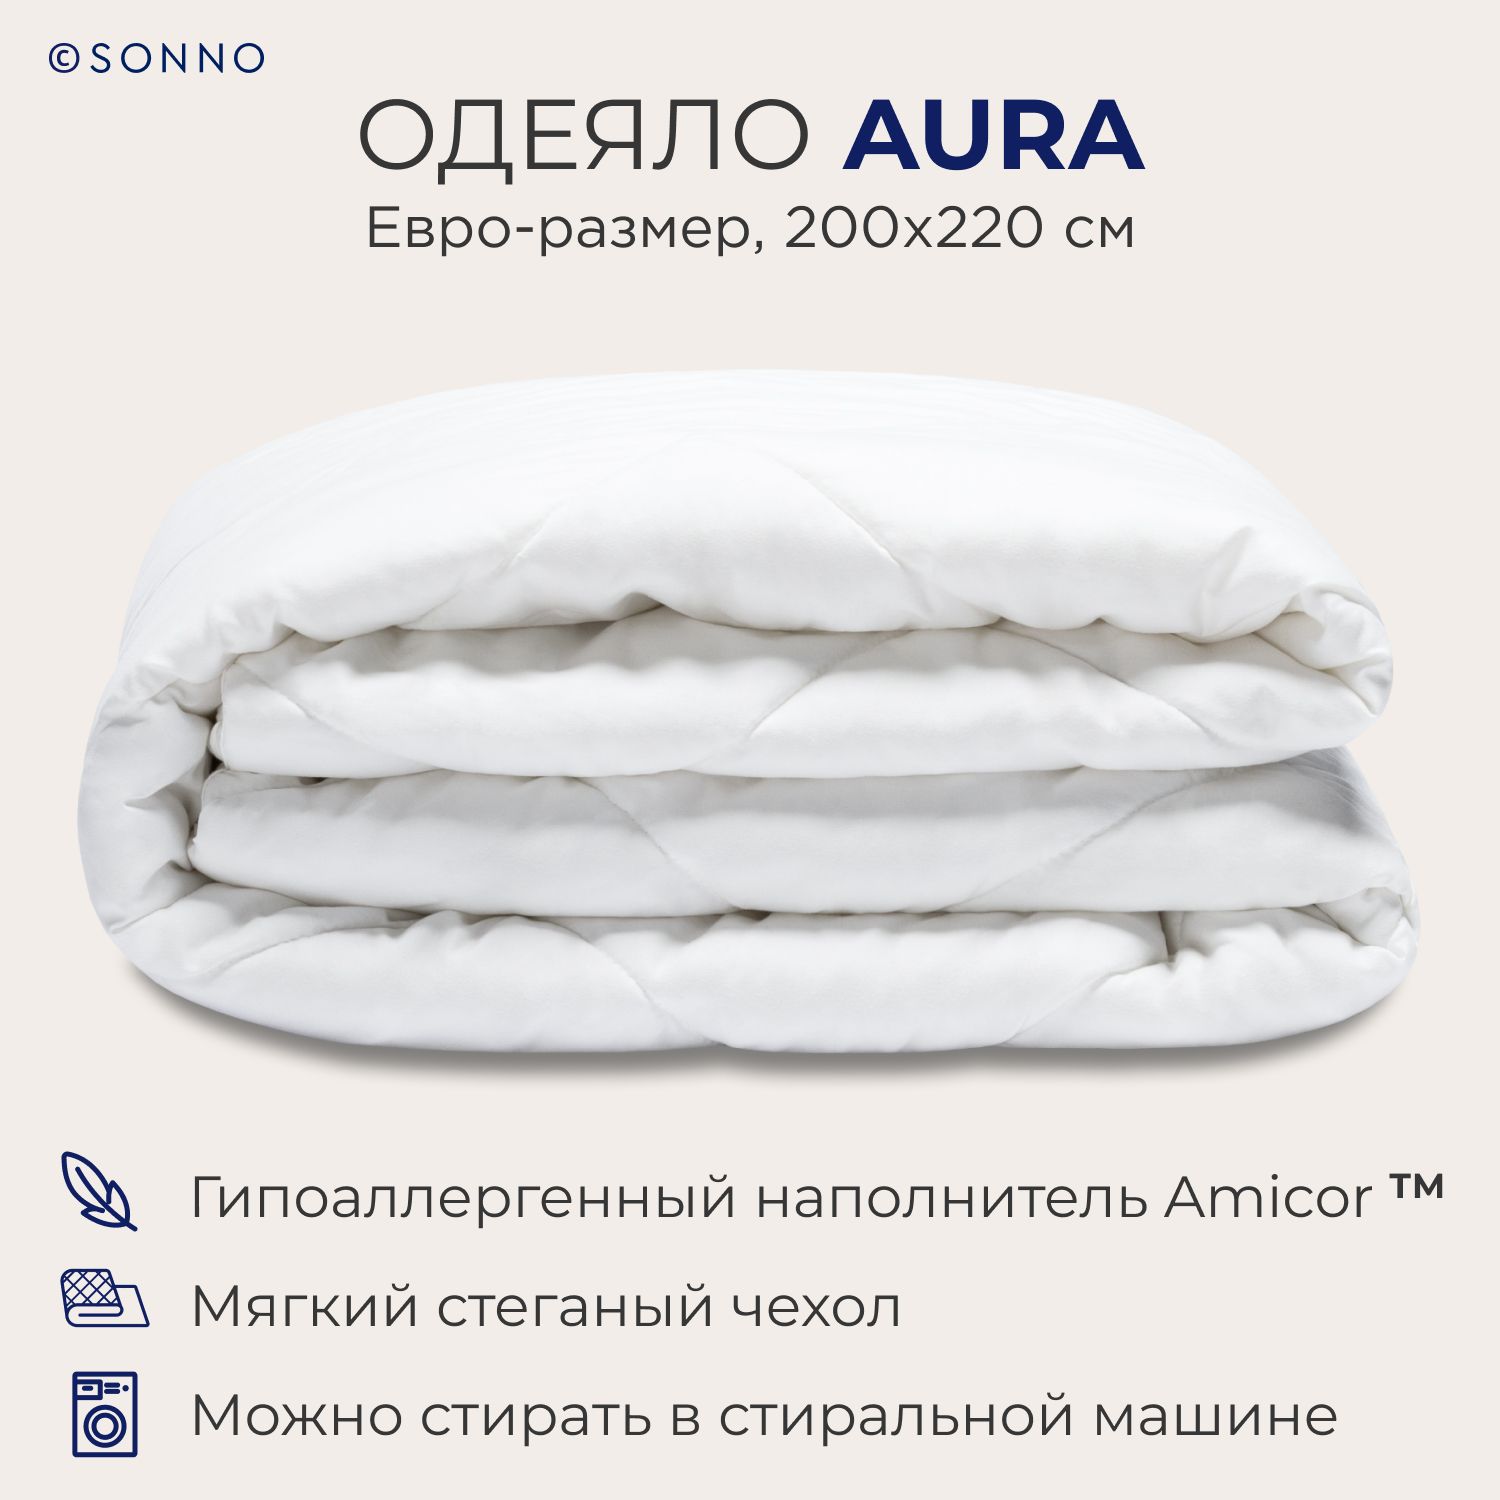 Одеяло SONNO AURA евро-размер, 200х220 см, всесезонное, стеганое, цвет Ослепительно белый